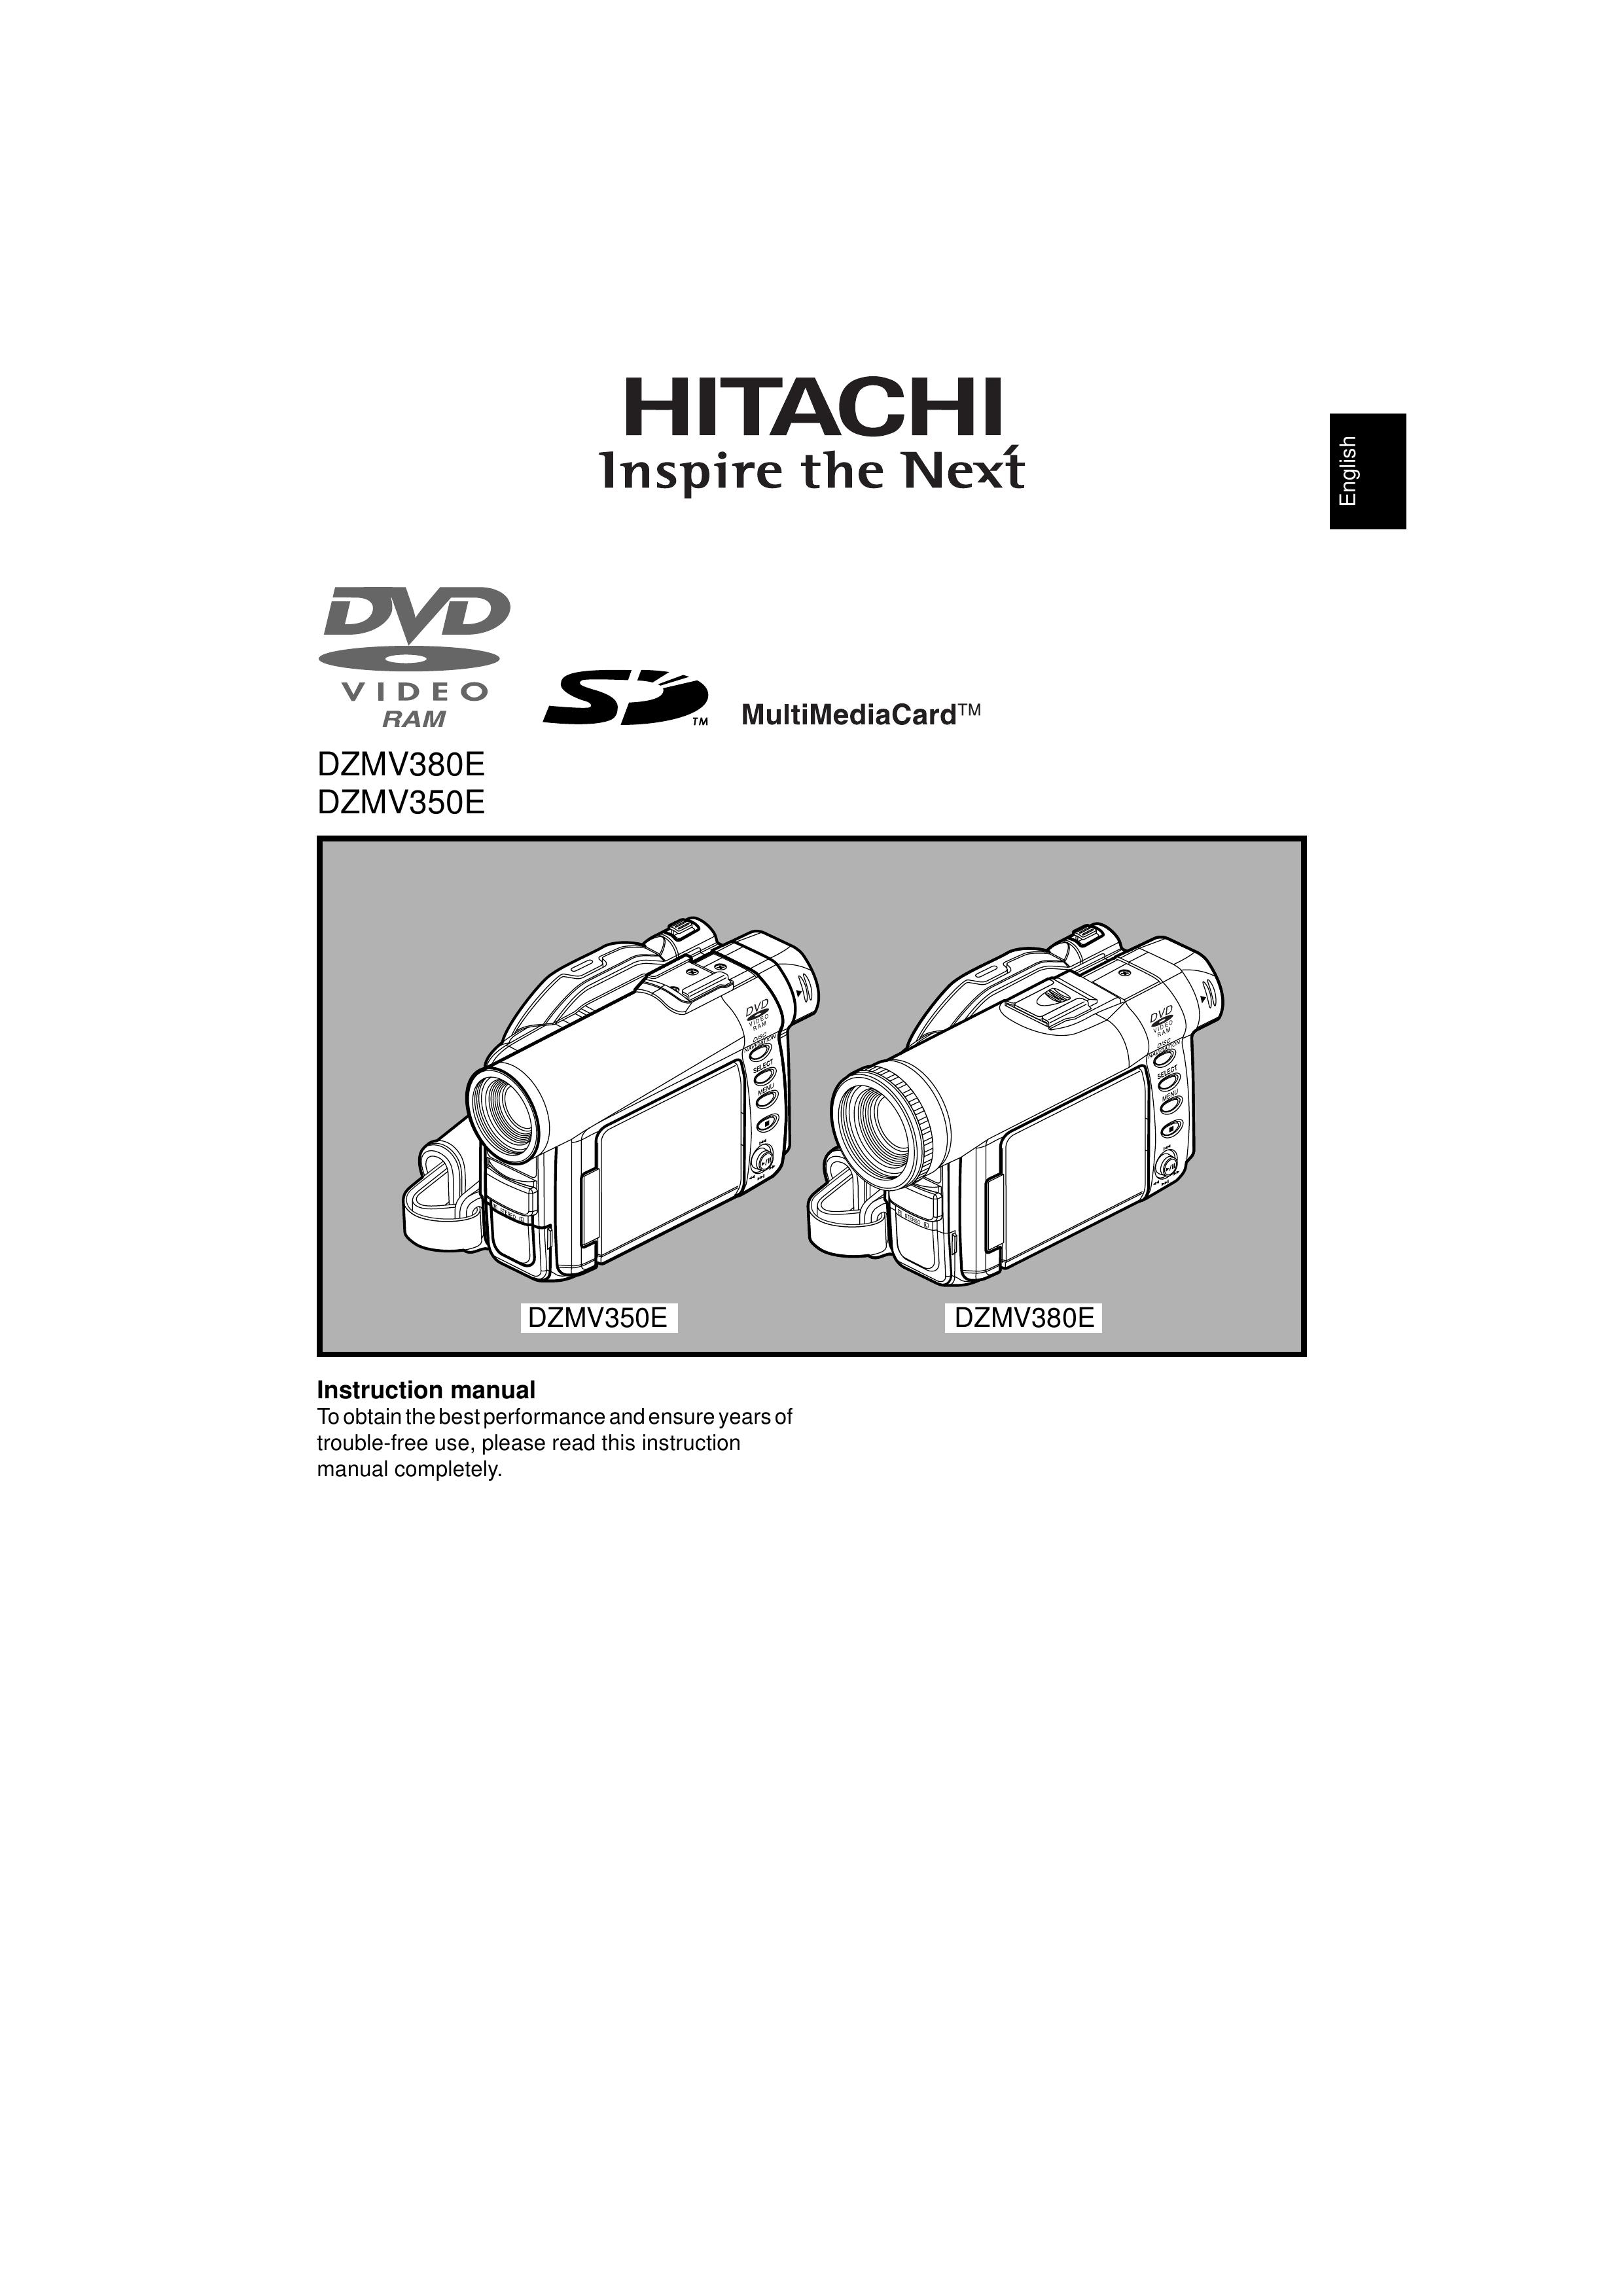 Hitachi DZMV350E Camcorder User Manual